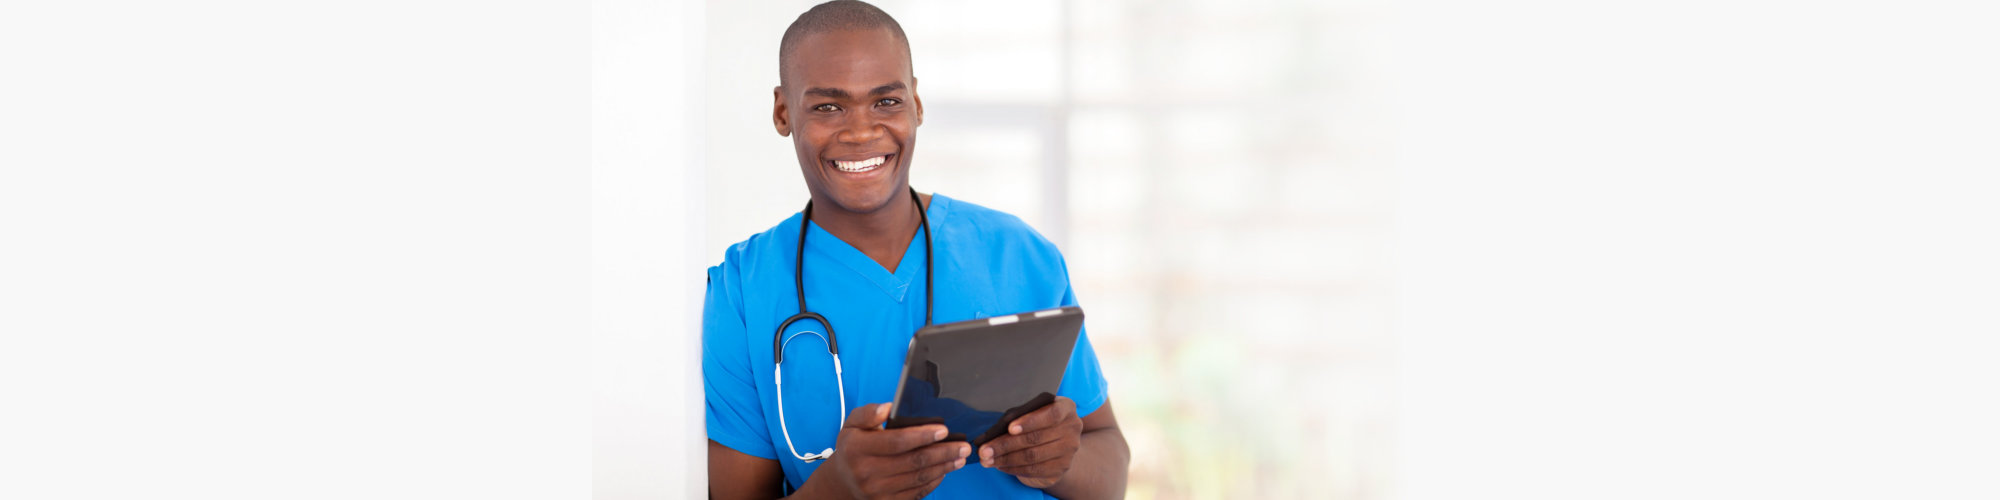 Healthcare worker tablet computer